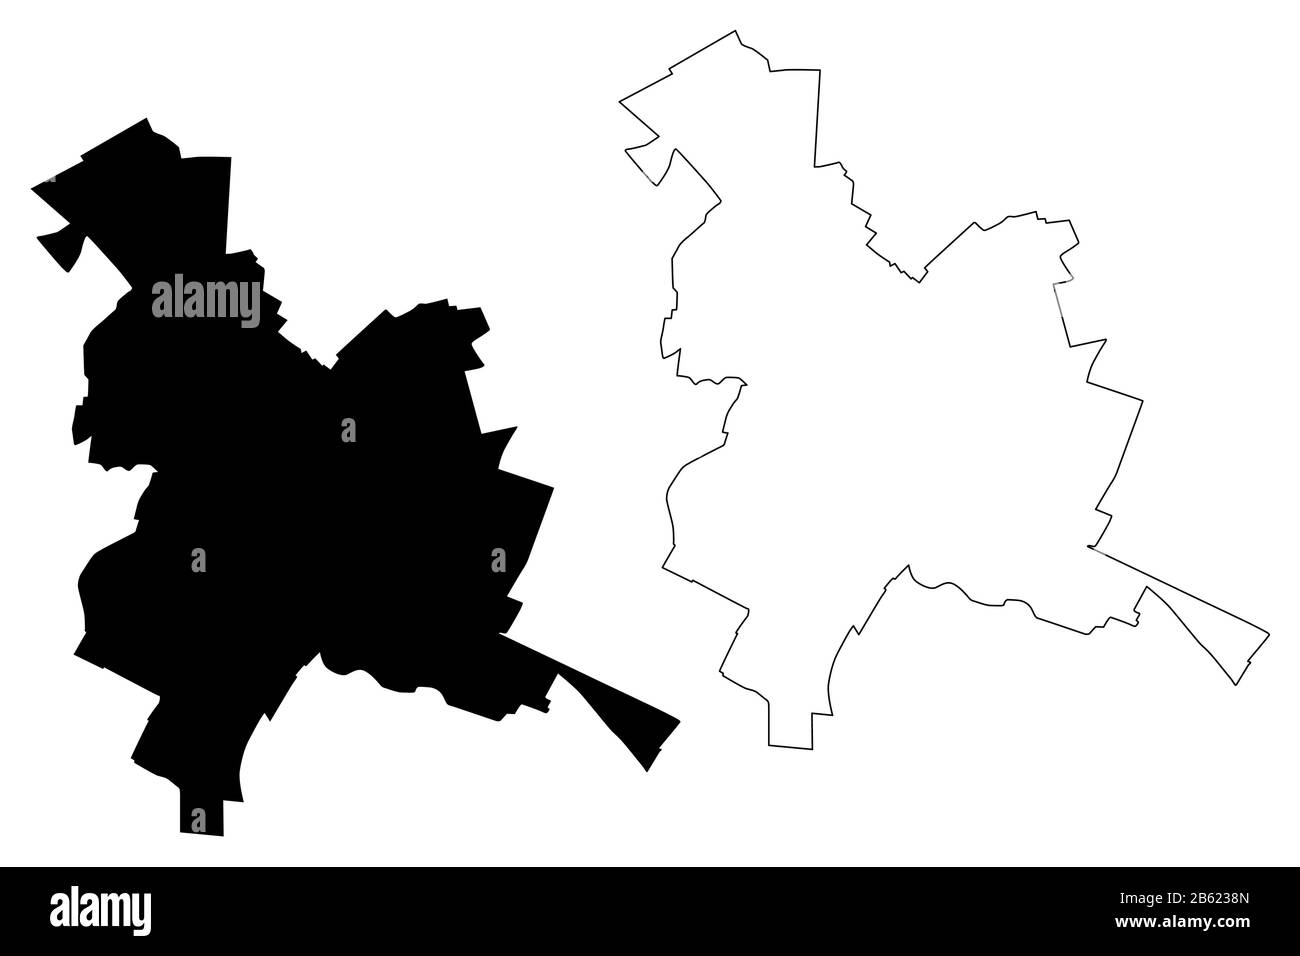 Reims City (République française, France) illustration vectorielle de carte, esquisse de griffonnage carte de la ville de Reims Illustration de Vecteur